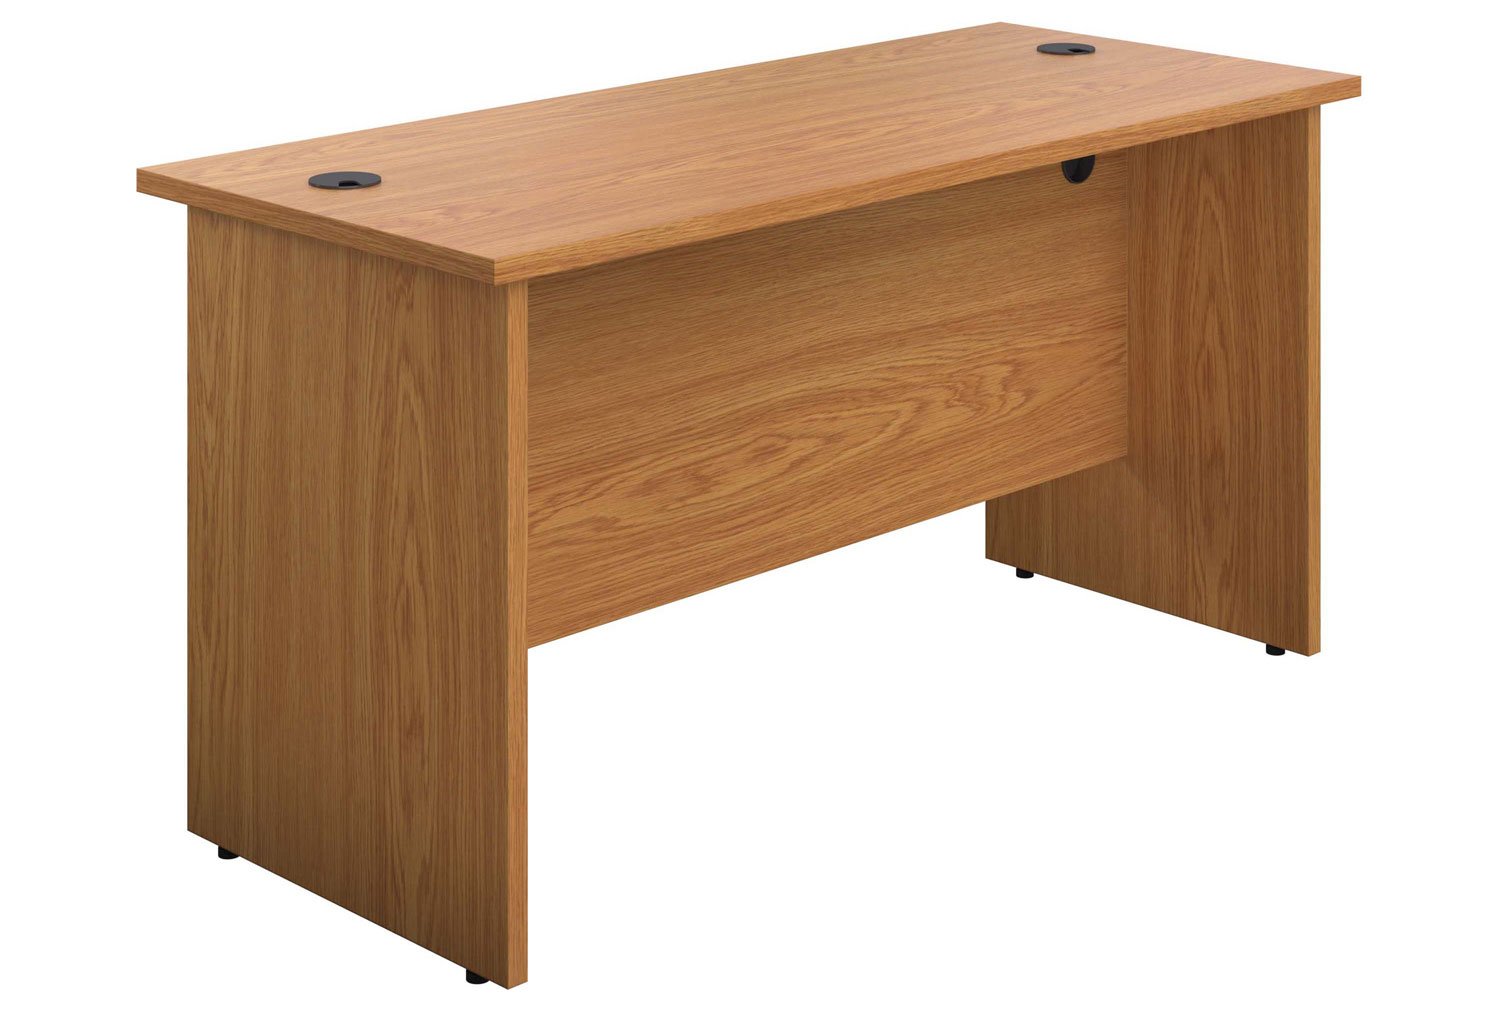 Proteus Panel End Narrow Rectangular Office Desk, 140wx60dx73h (cm), Oak